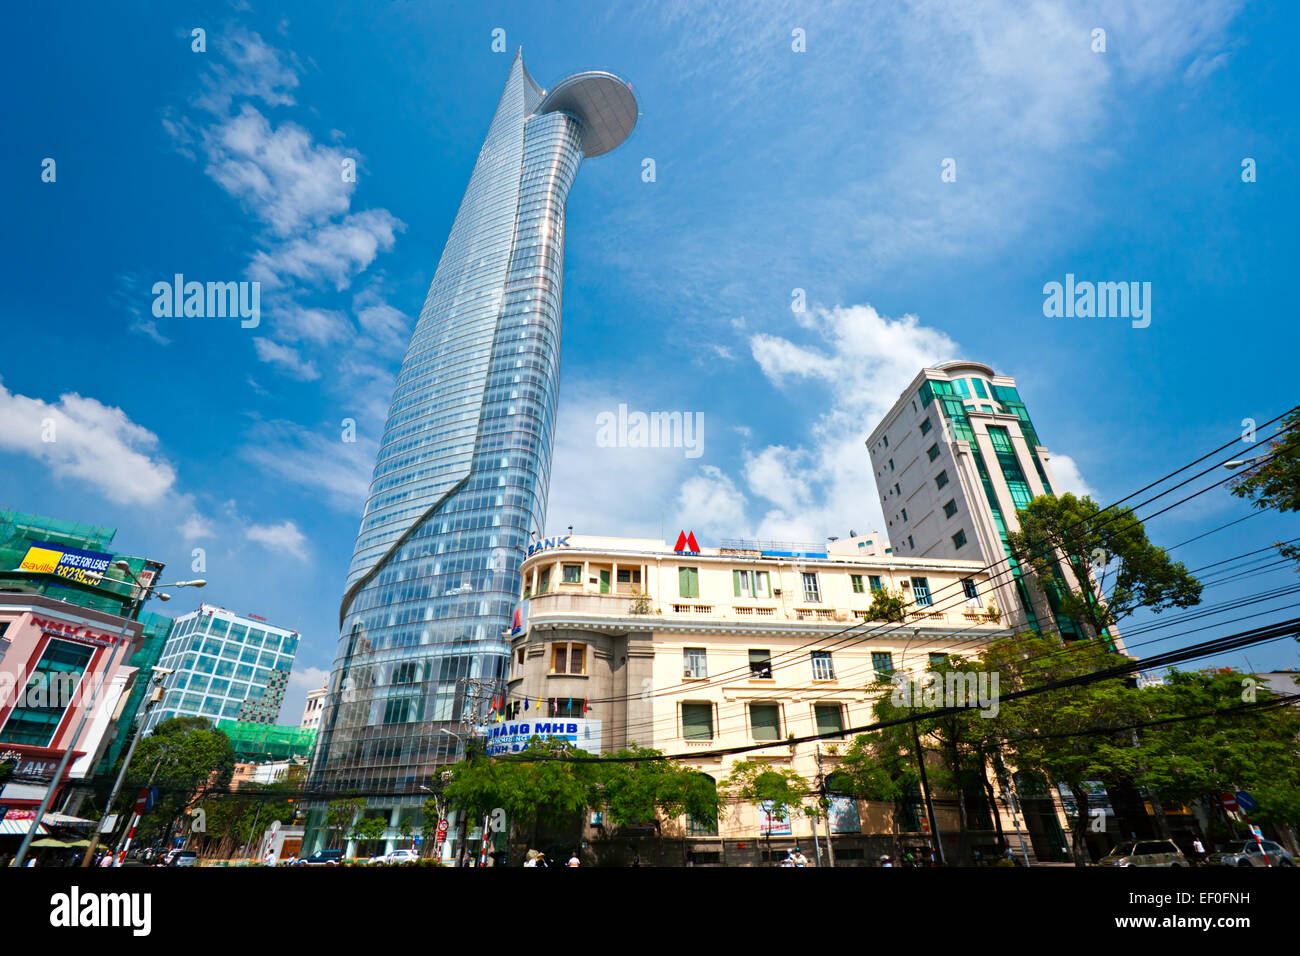 HO CHI MINH CITY - 18 dicembre: La Bitexco Financial Tower è il più alto edificio in Vietnam, inaugurato nel 30 ottobre 2010. Foto Stock